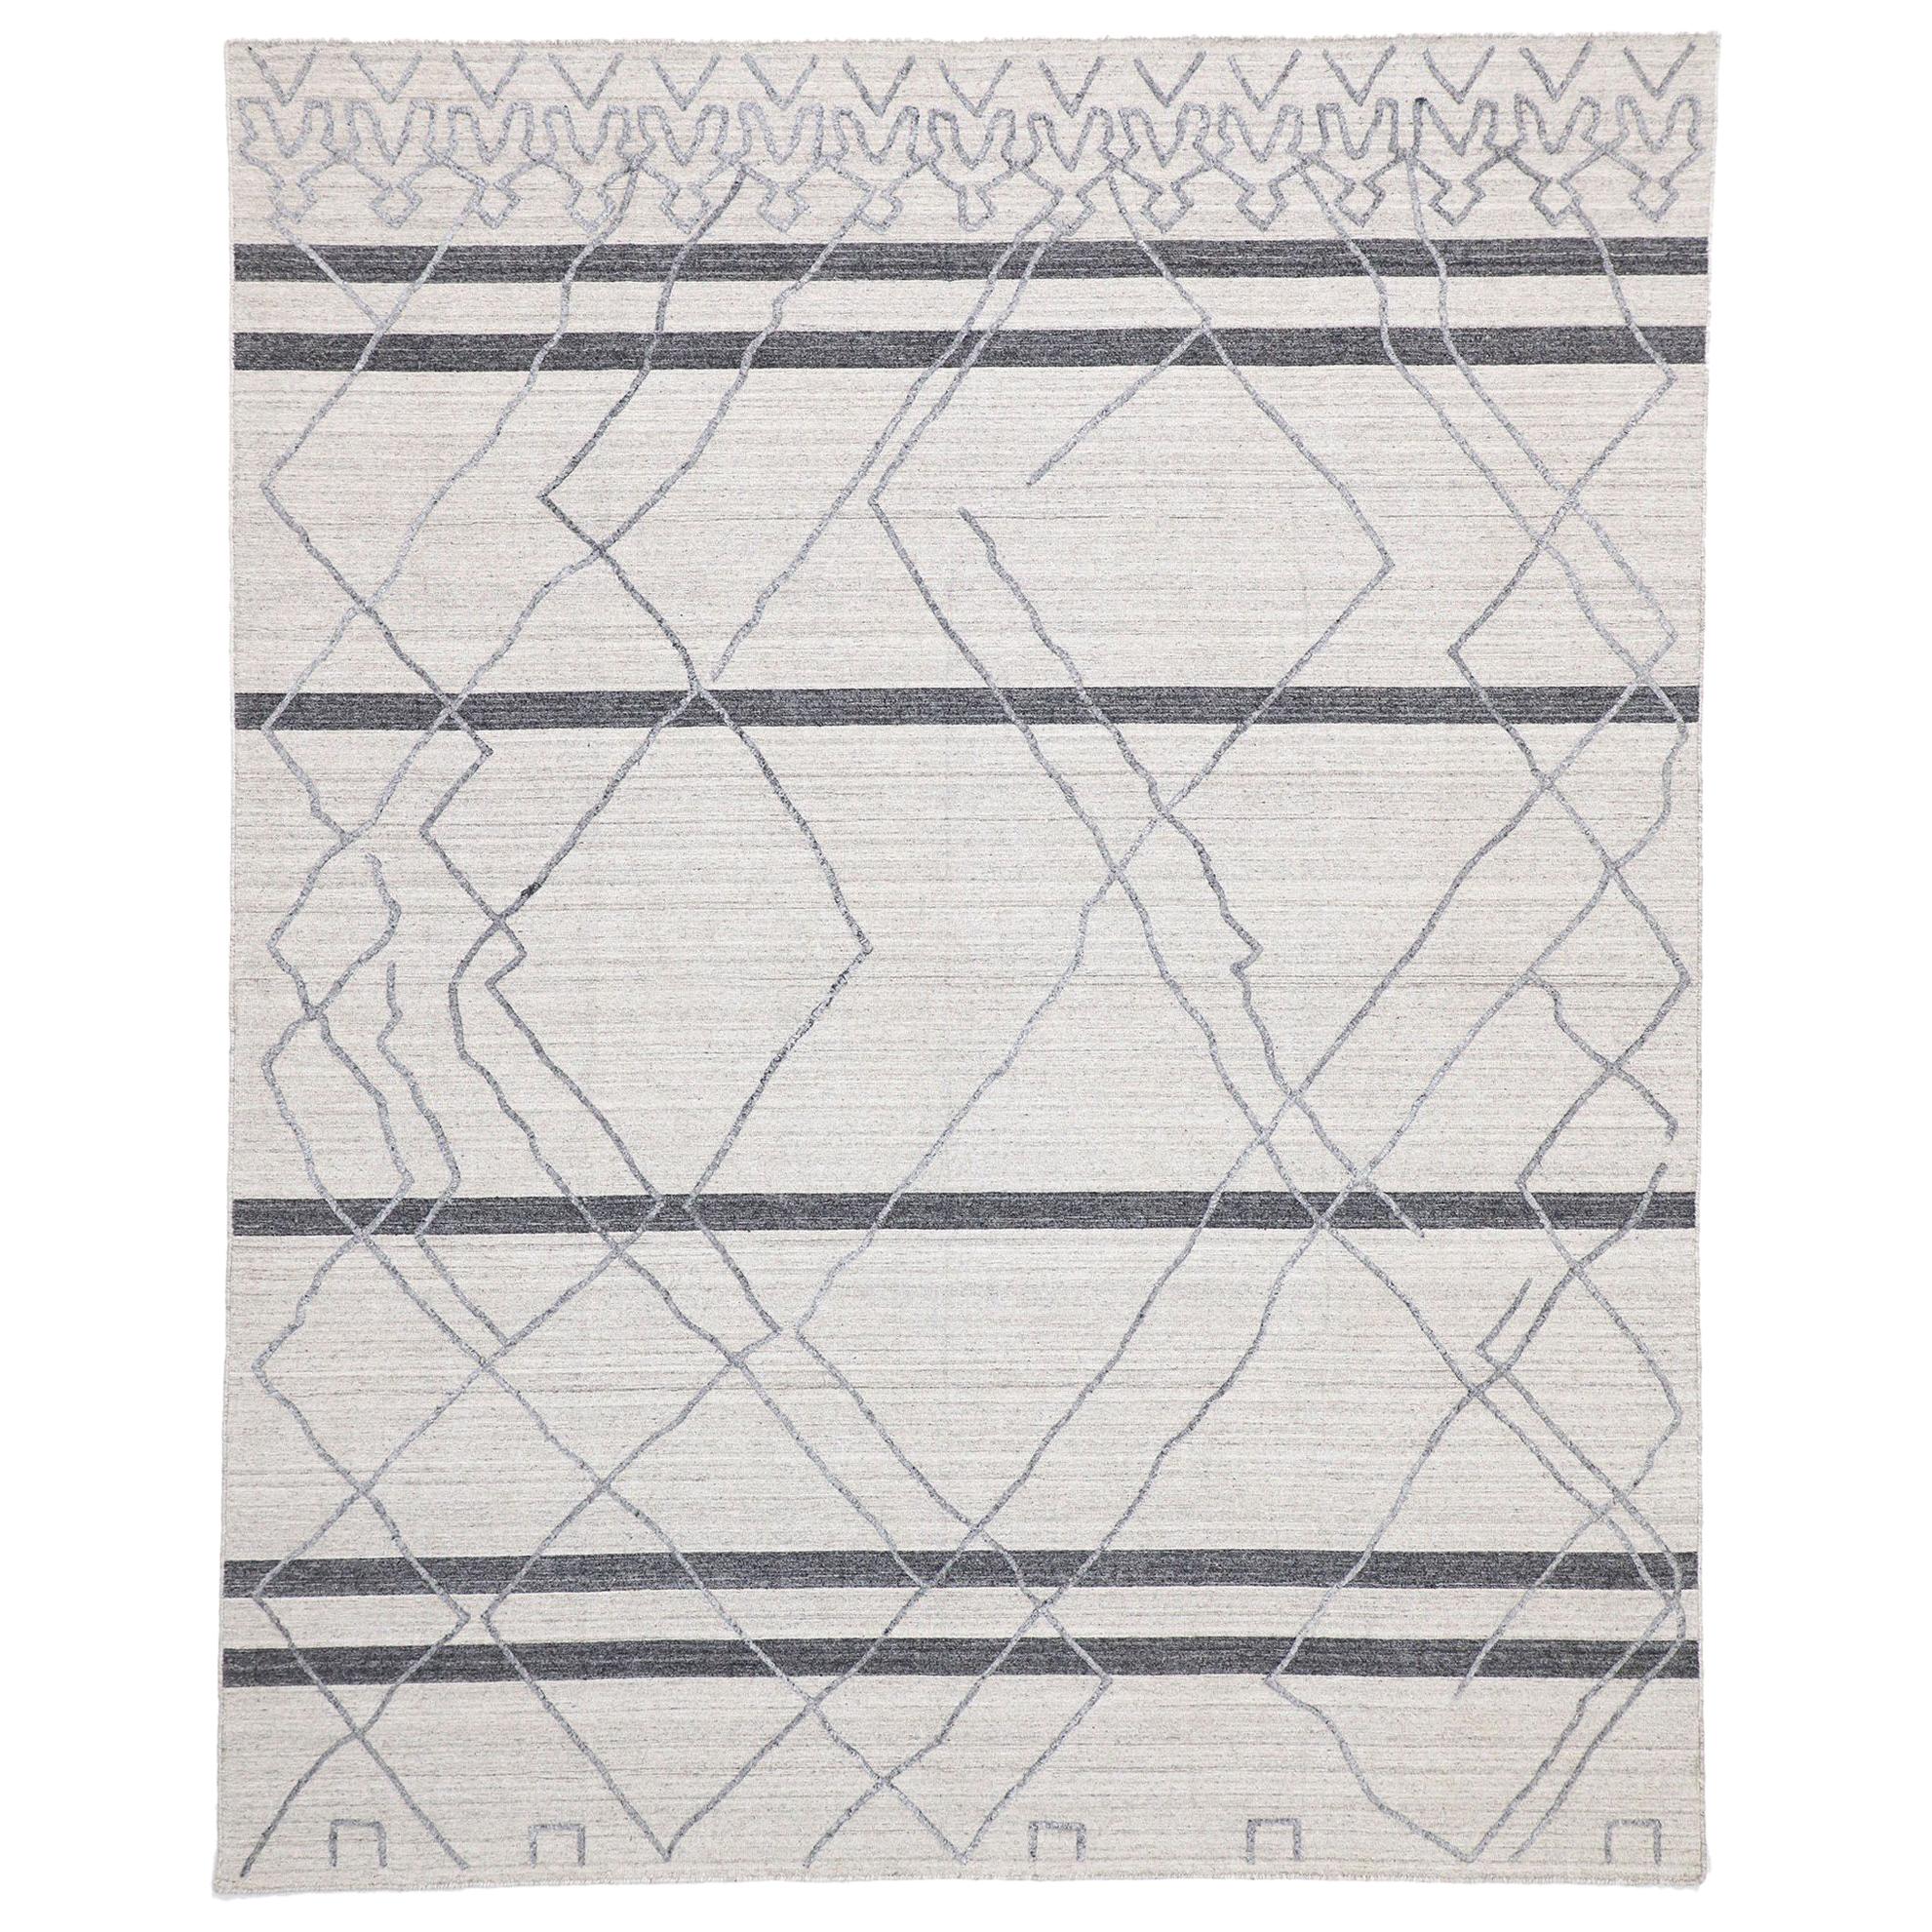 Nouveau tapis gris moderne texturé avec motif de treillis marocain en relief